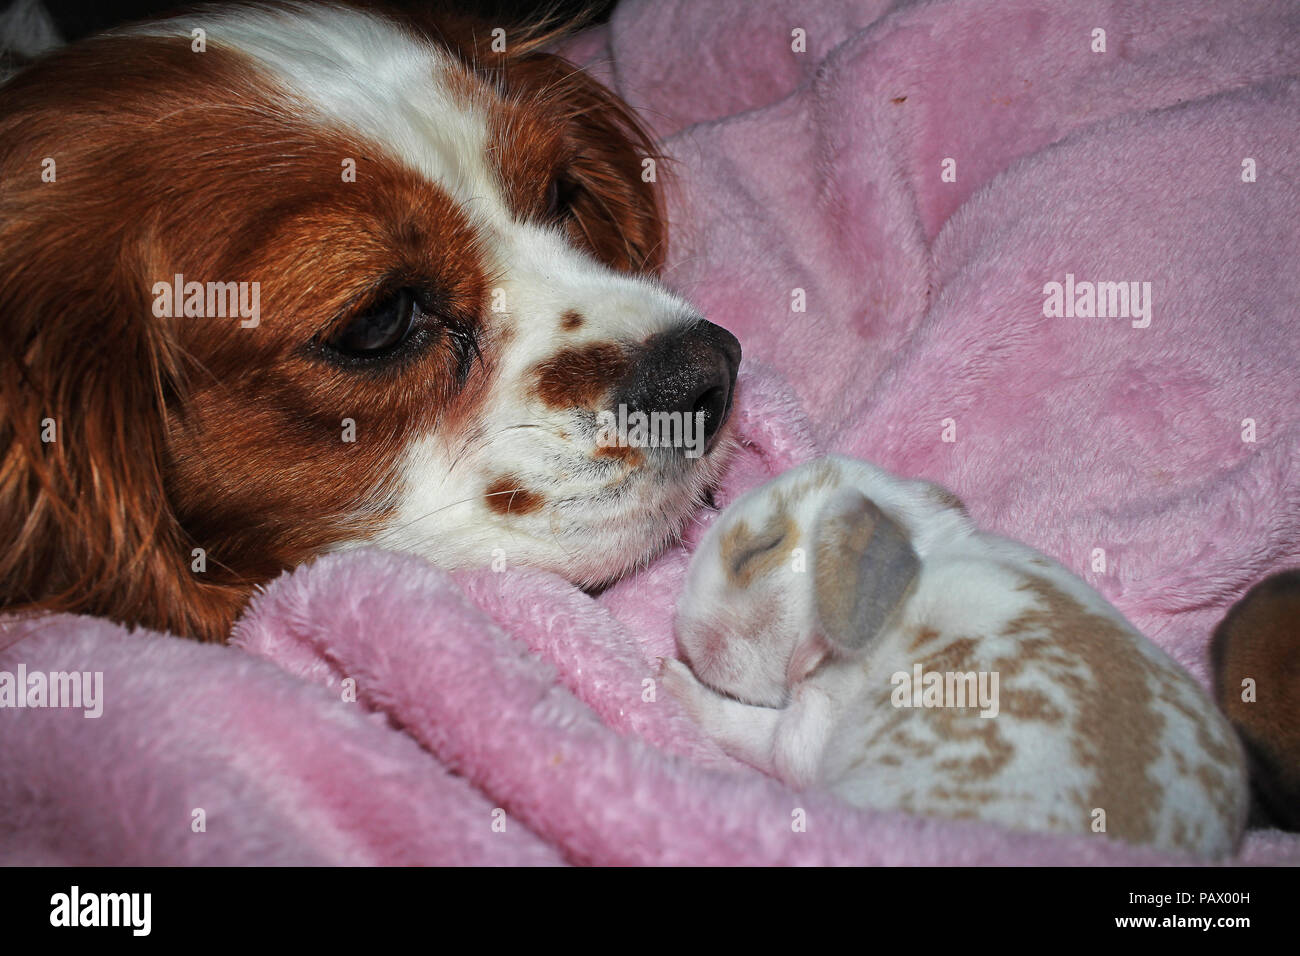 Cane e baby bunny nuova nata kit di coniglio. Cavalier King Charles Spaniel cucciolo e lop animali insieme. Carino. Foto Stock